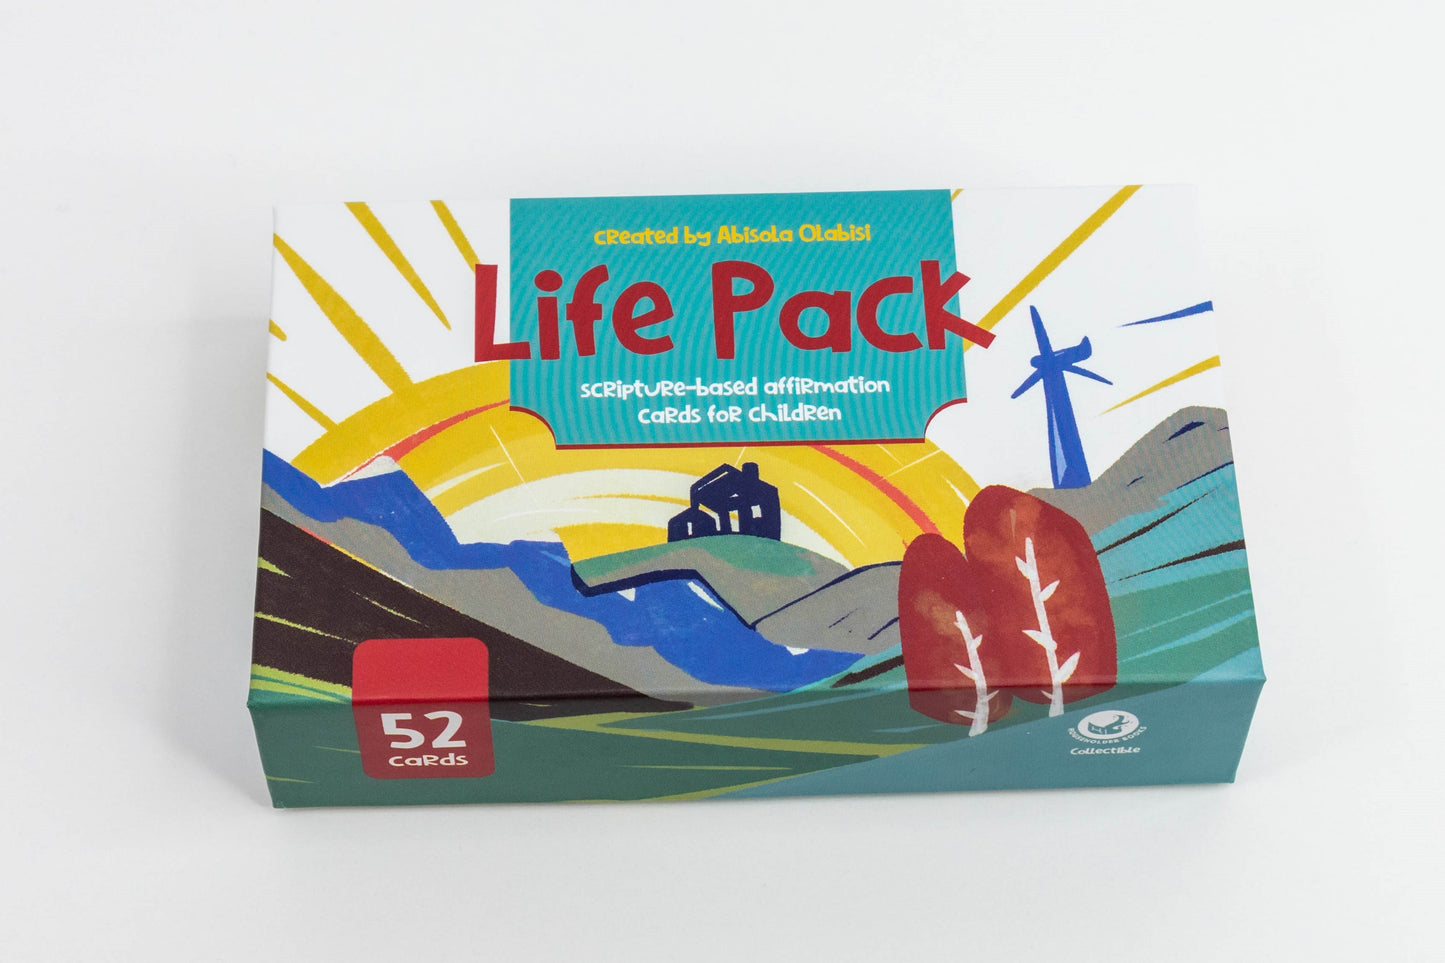 Life Pack: Scripture-based affirmation cards for children